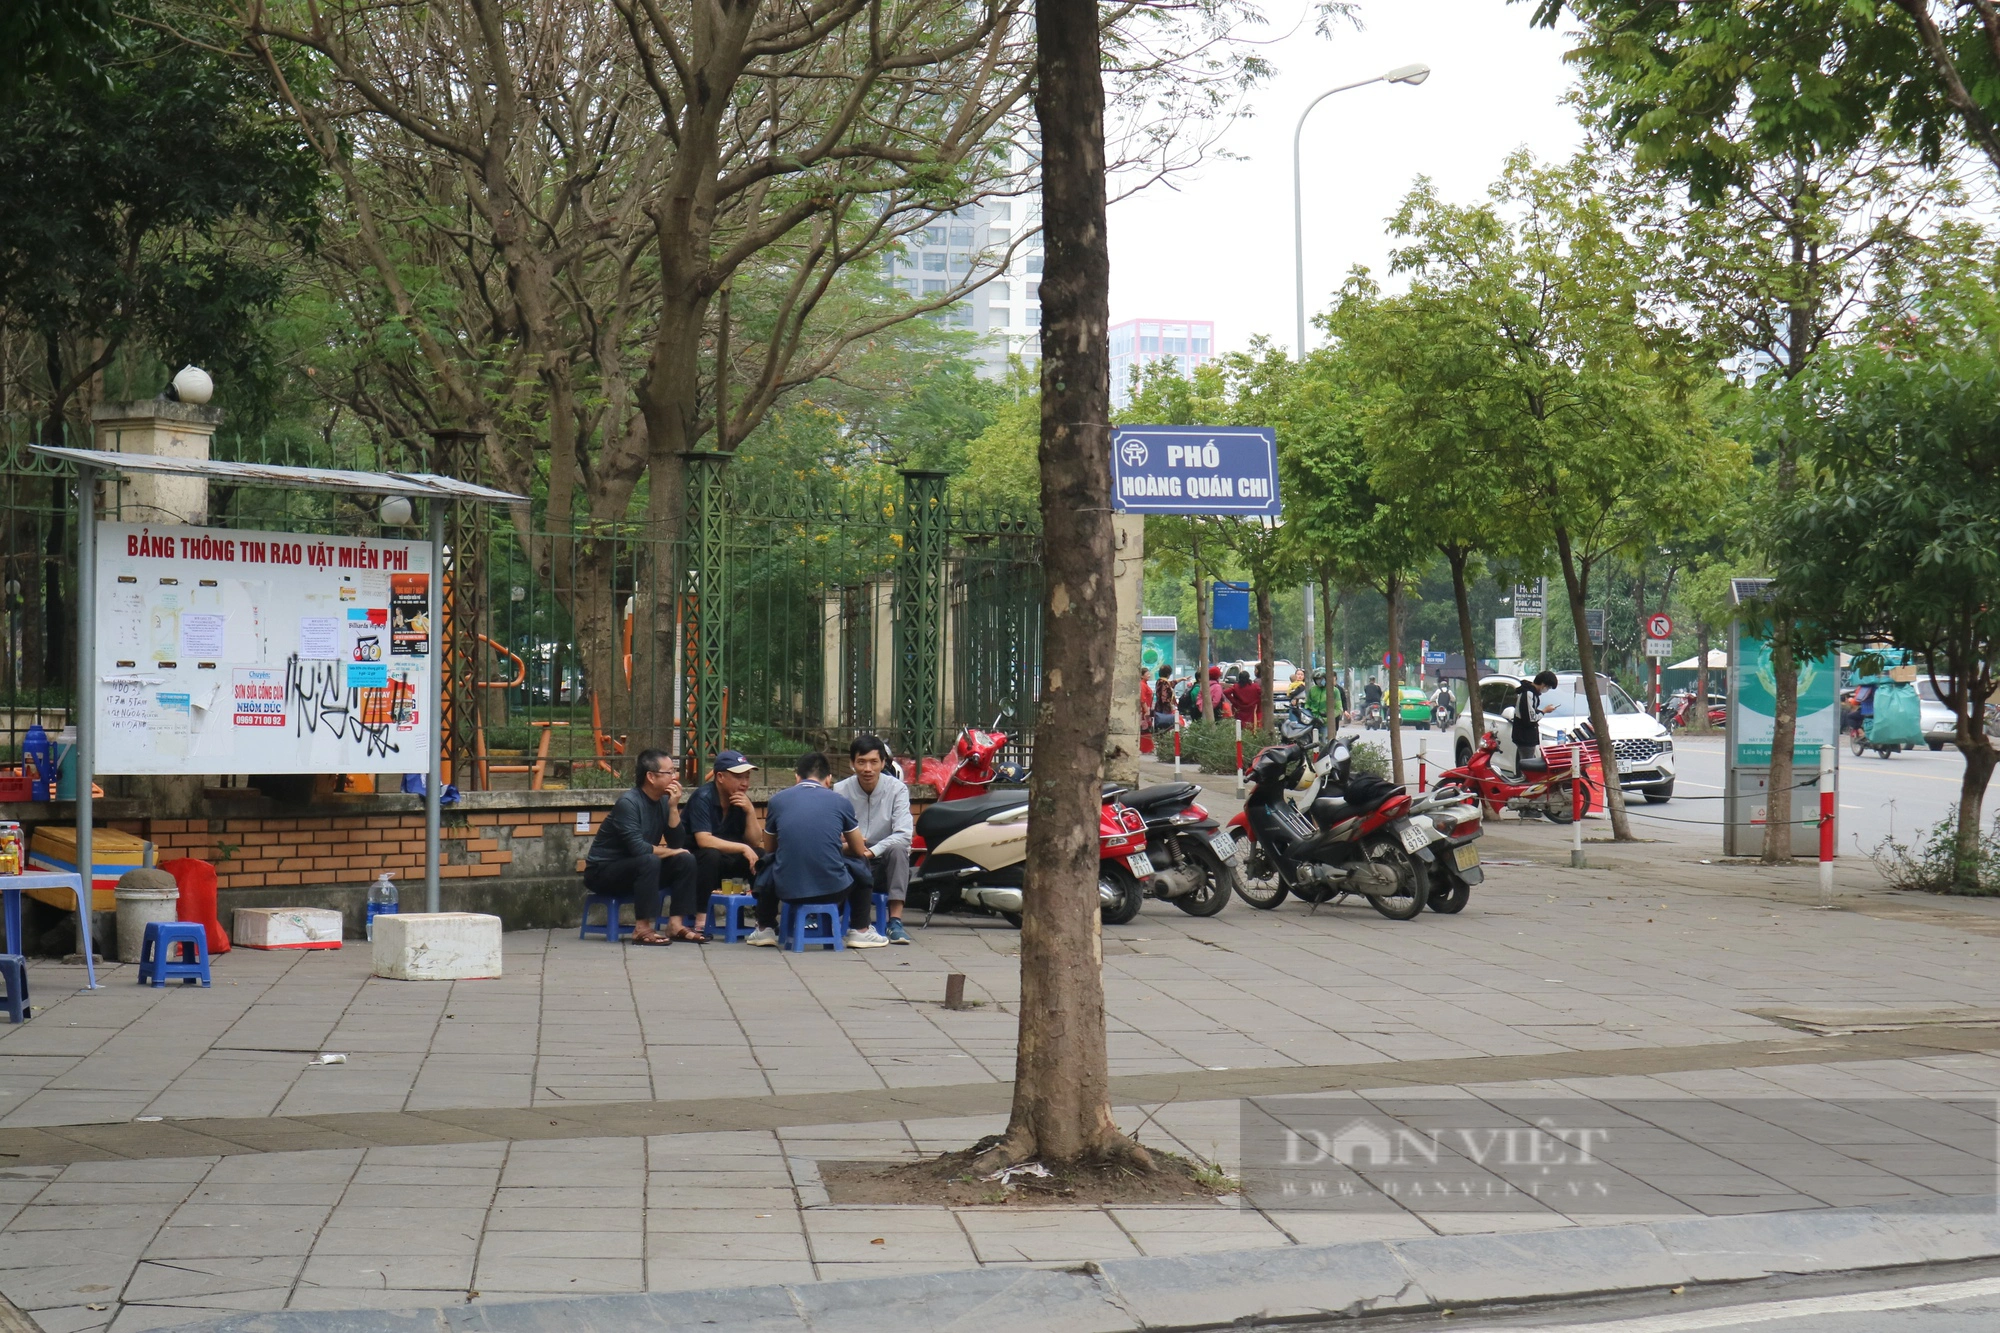 Chuyện lạ "có một không hai" ở Hà Nội: Biển báo tên đường được treo trên cây- Ảnh 1.